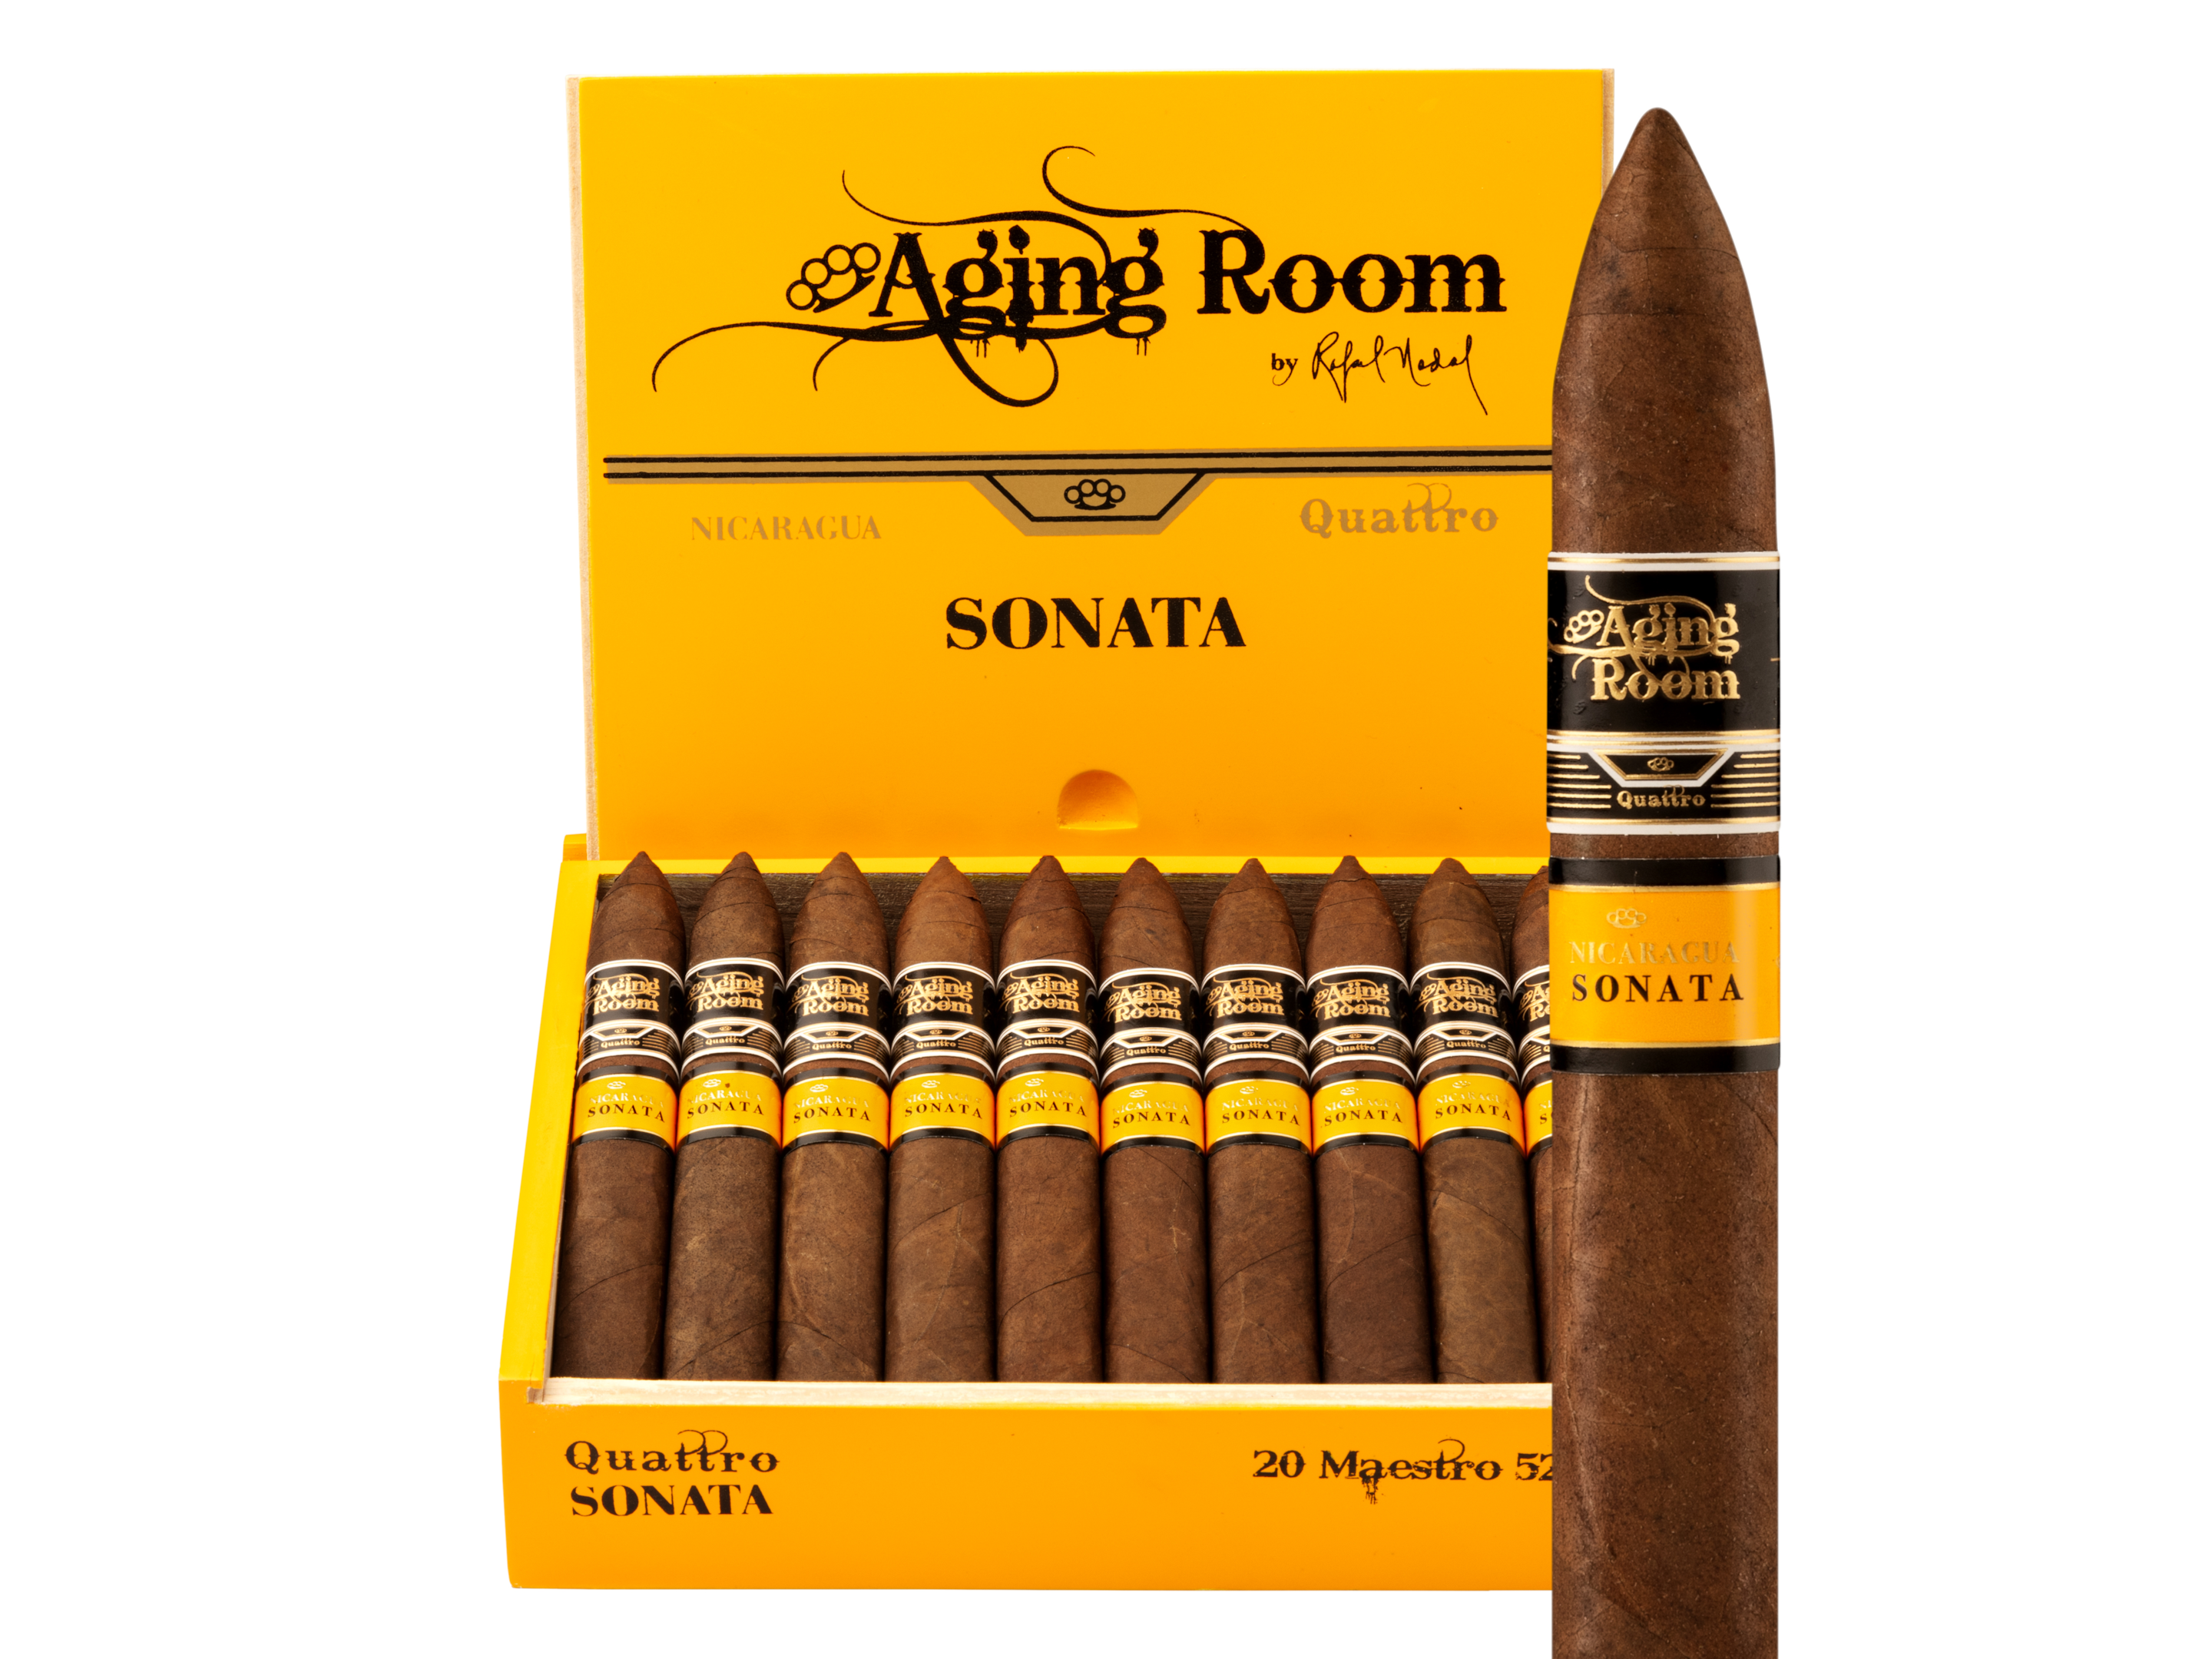 A picture of a Nicaragua Sonata Maestro cigar